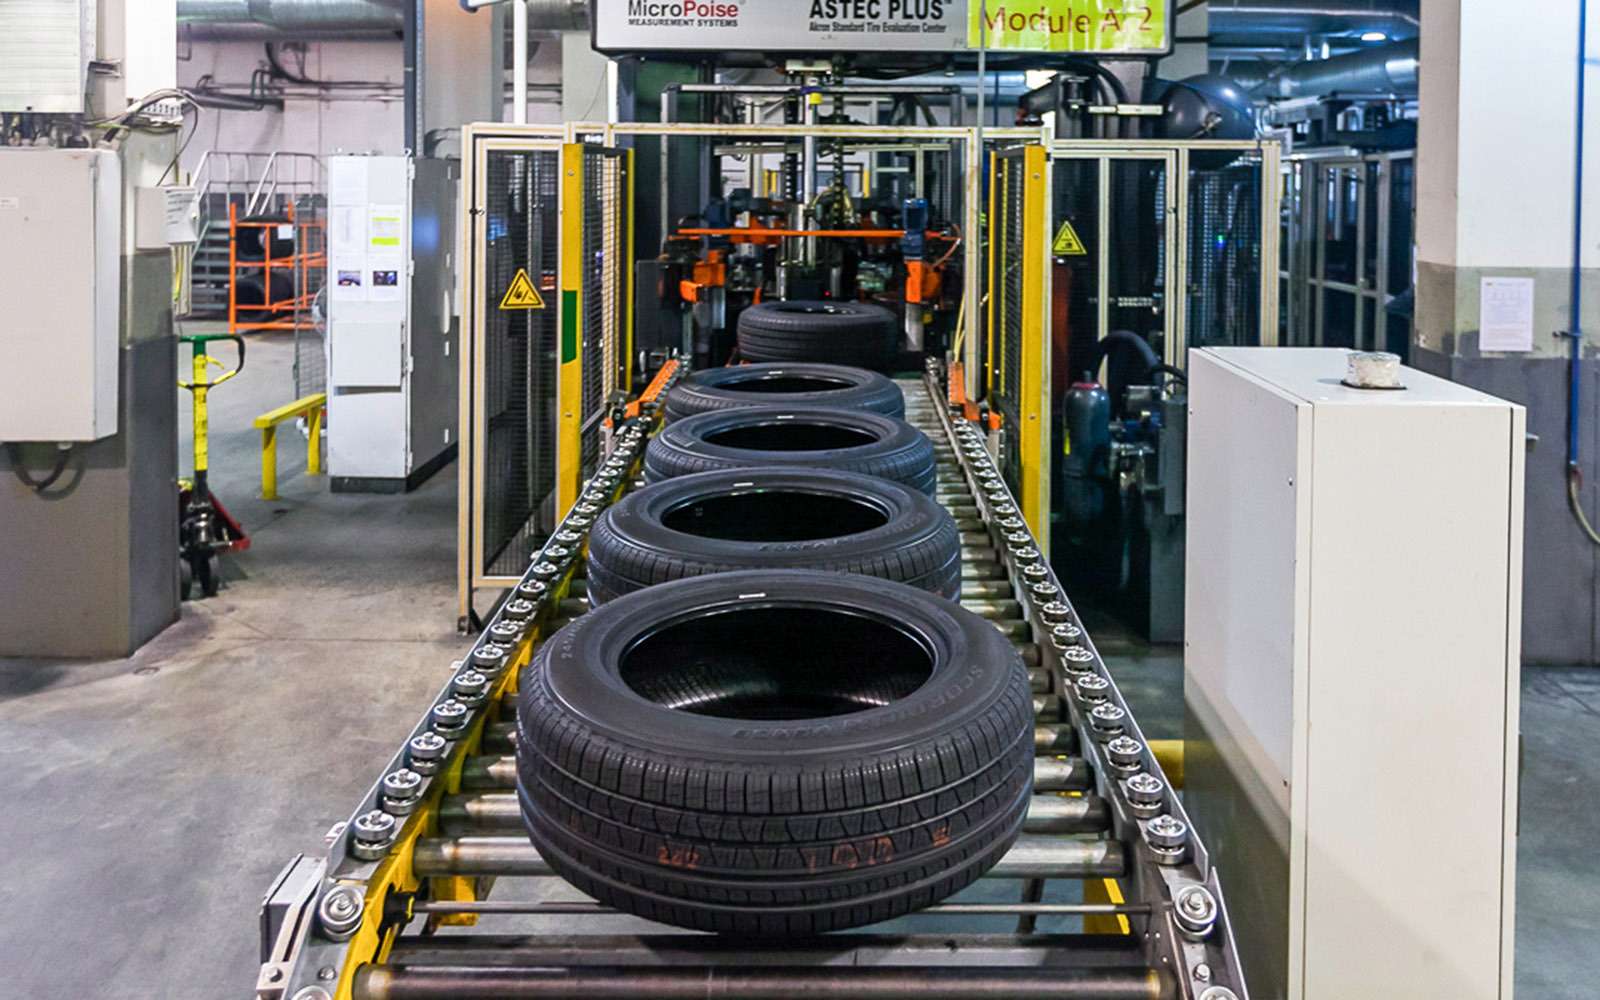 Готовые шины проходят контроль качества и, в зависимости от результатов, отправляются на склад готовой продукции либо прямиком на утилизацию. Некоторые экземпляры отбирают для продолжительных ресурсных тестов.